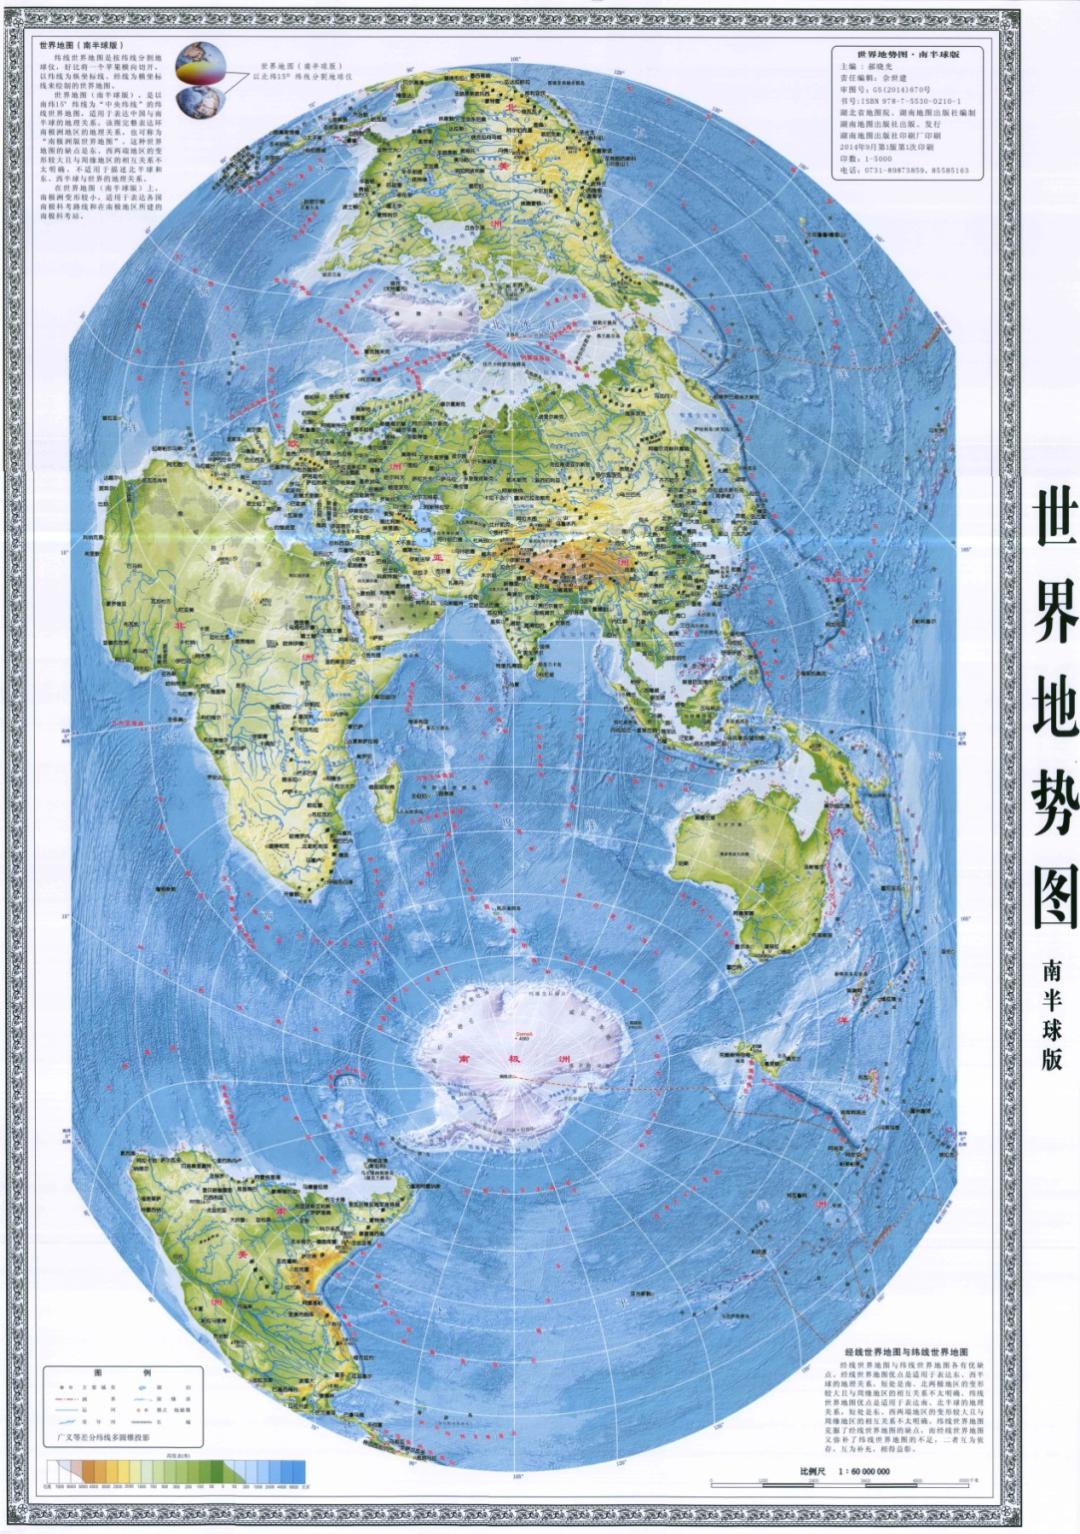 图7:竖版世界地图(北半球版)(郝晓光主编,湖南地图出版社2014年出版)